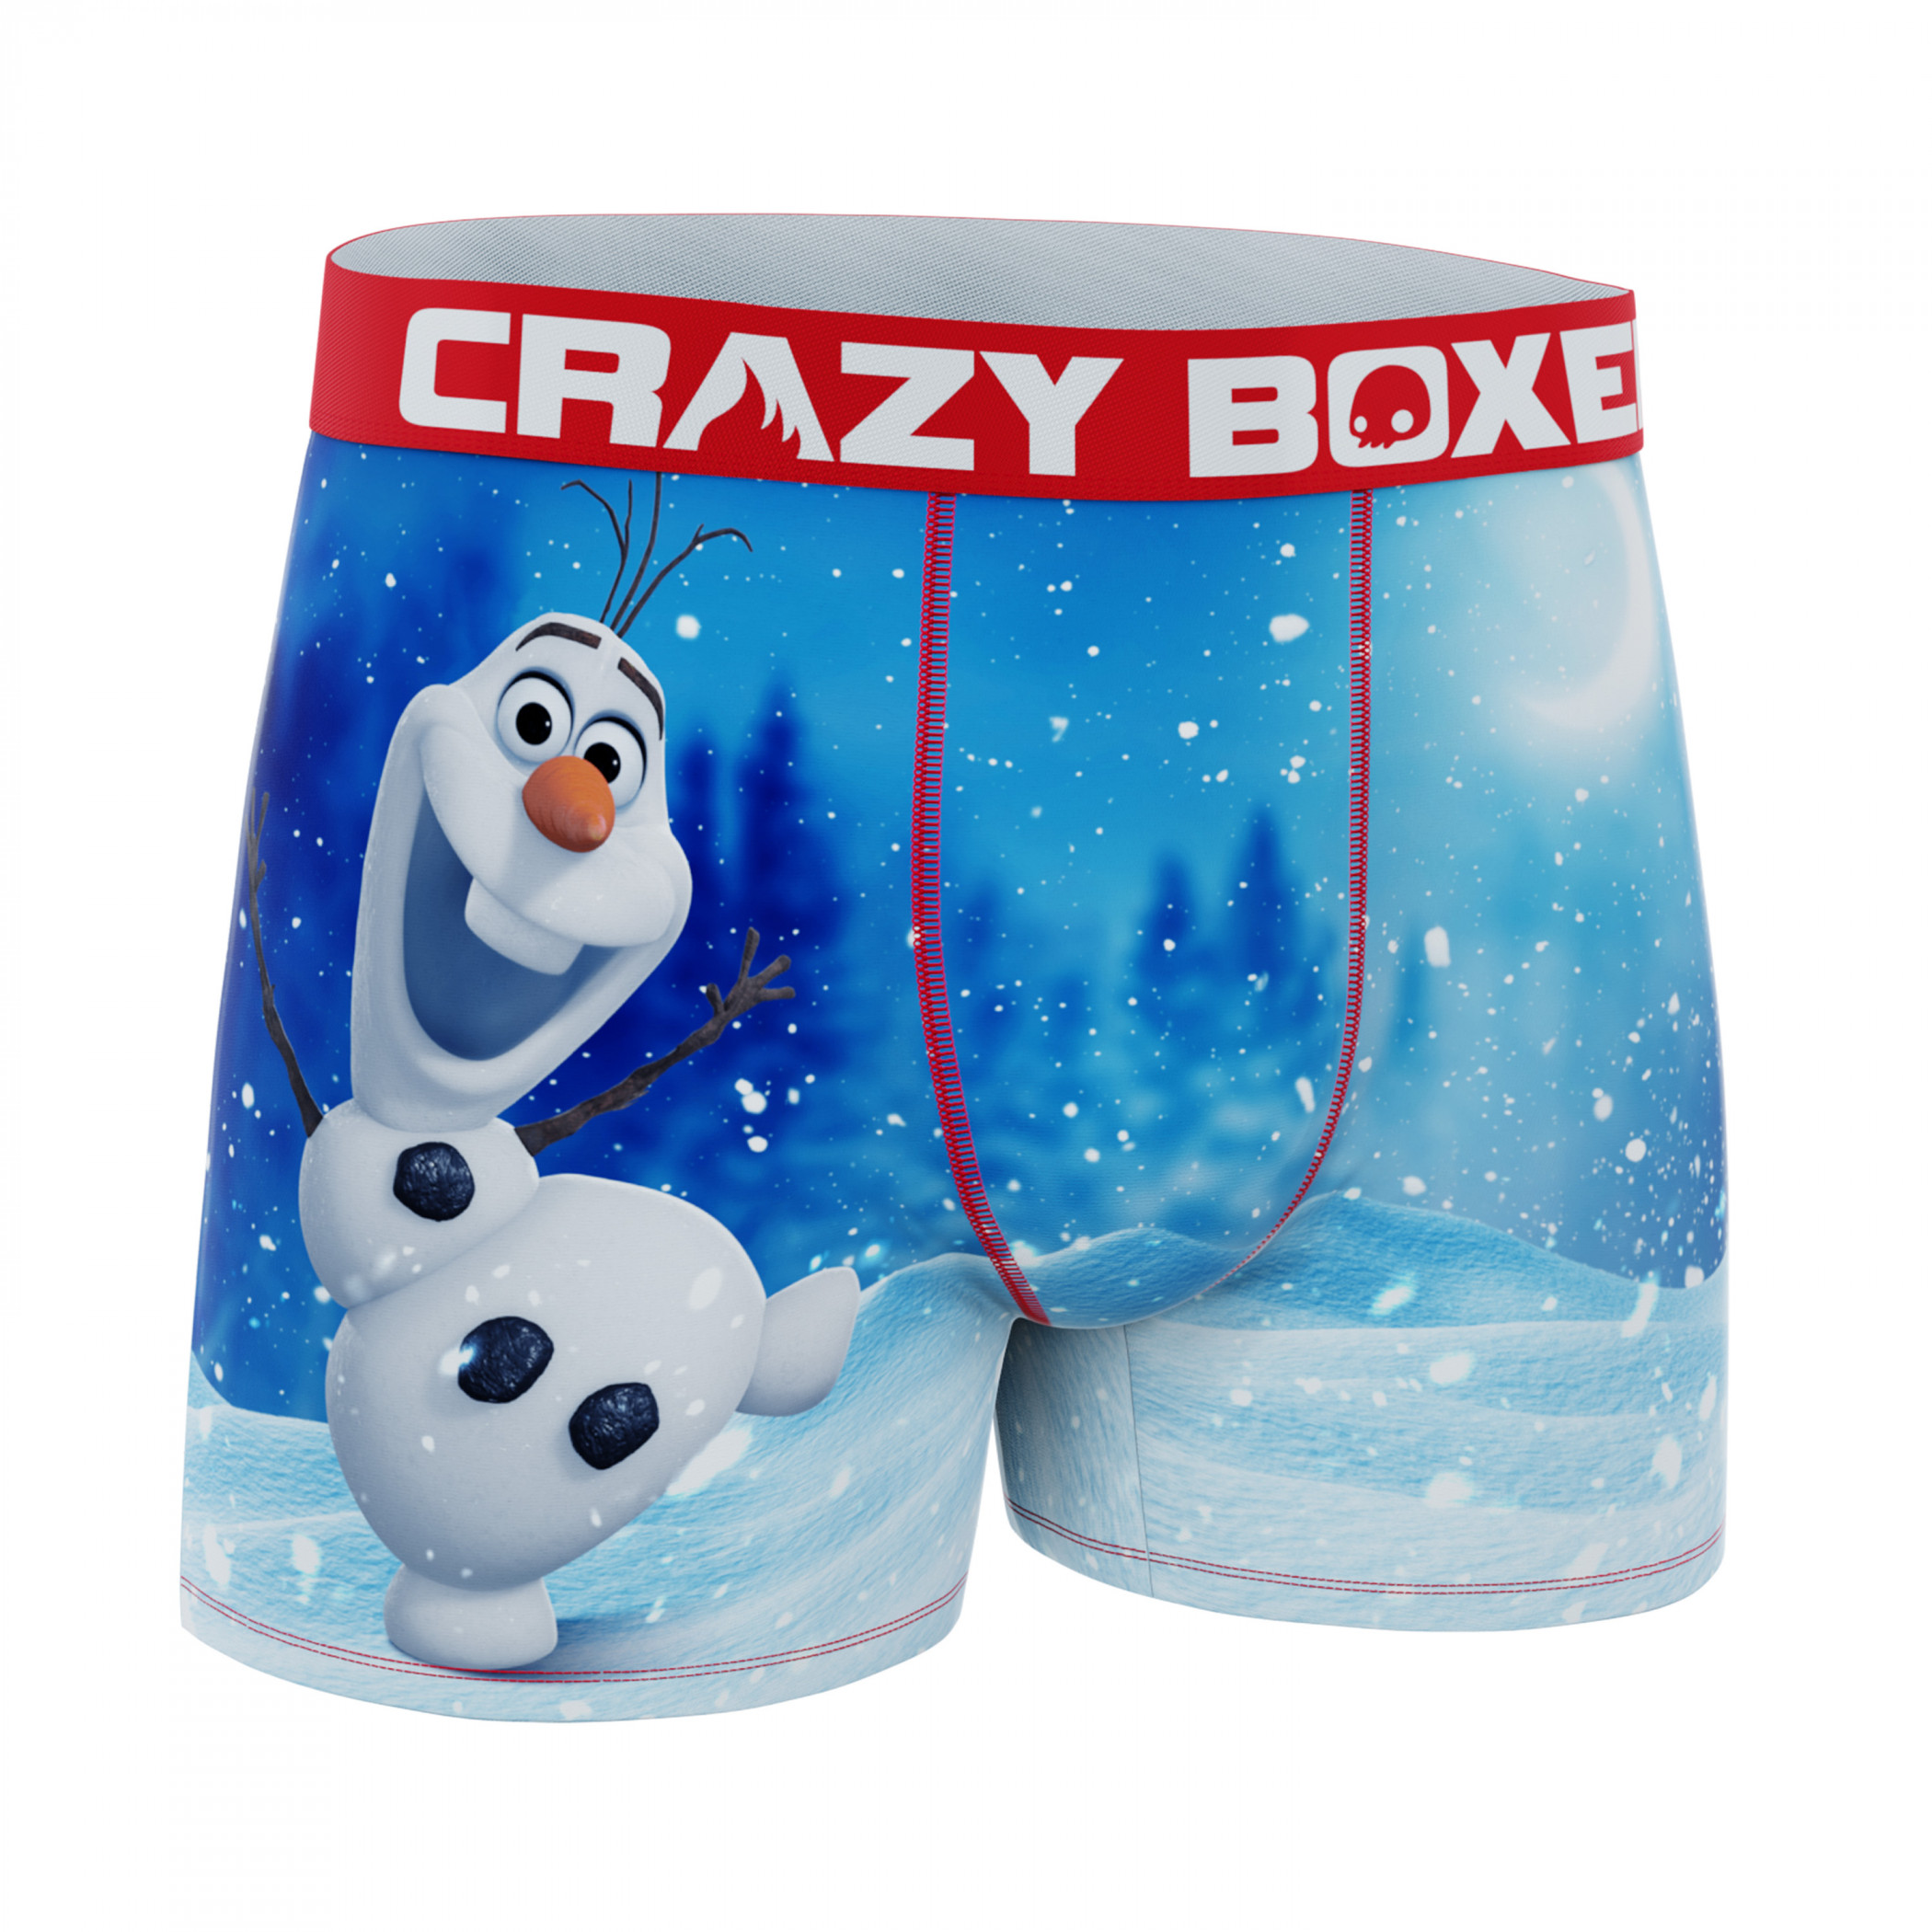 Crazy Boxers Frozen Olaf Boxer Briefs in Popcorn Box Multi-Color